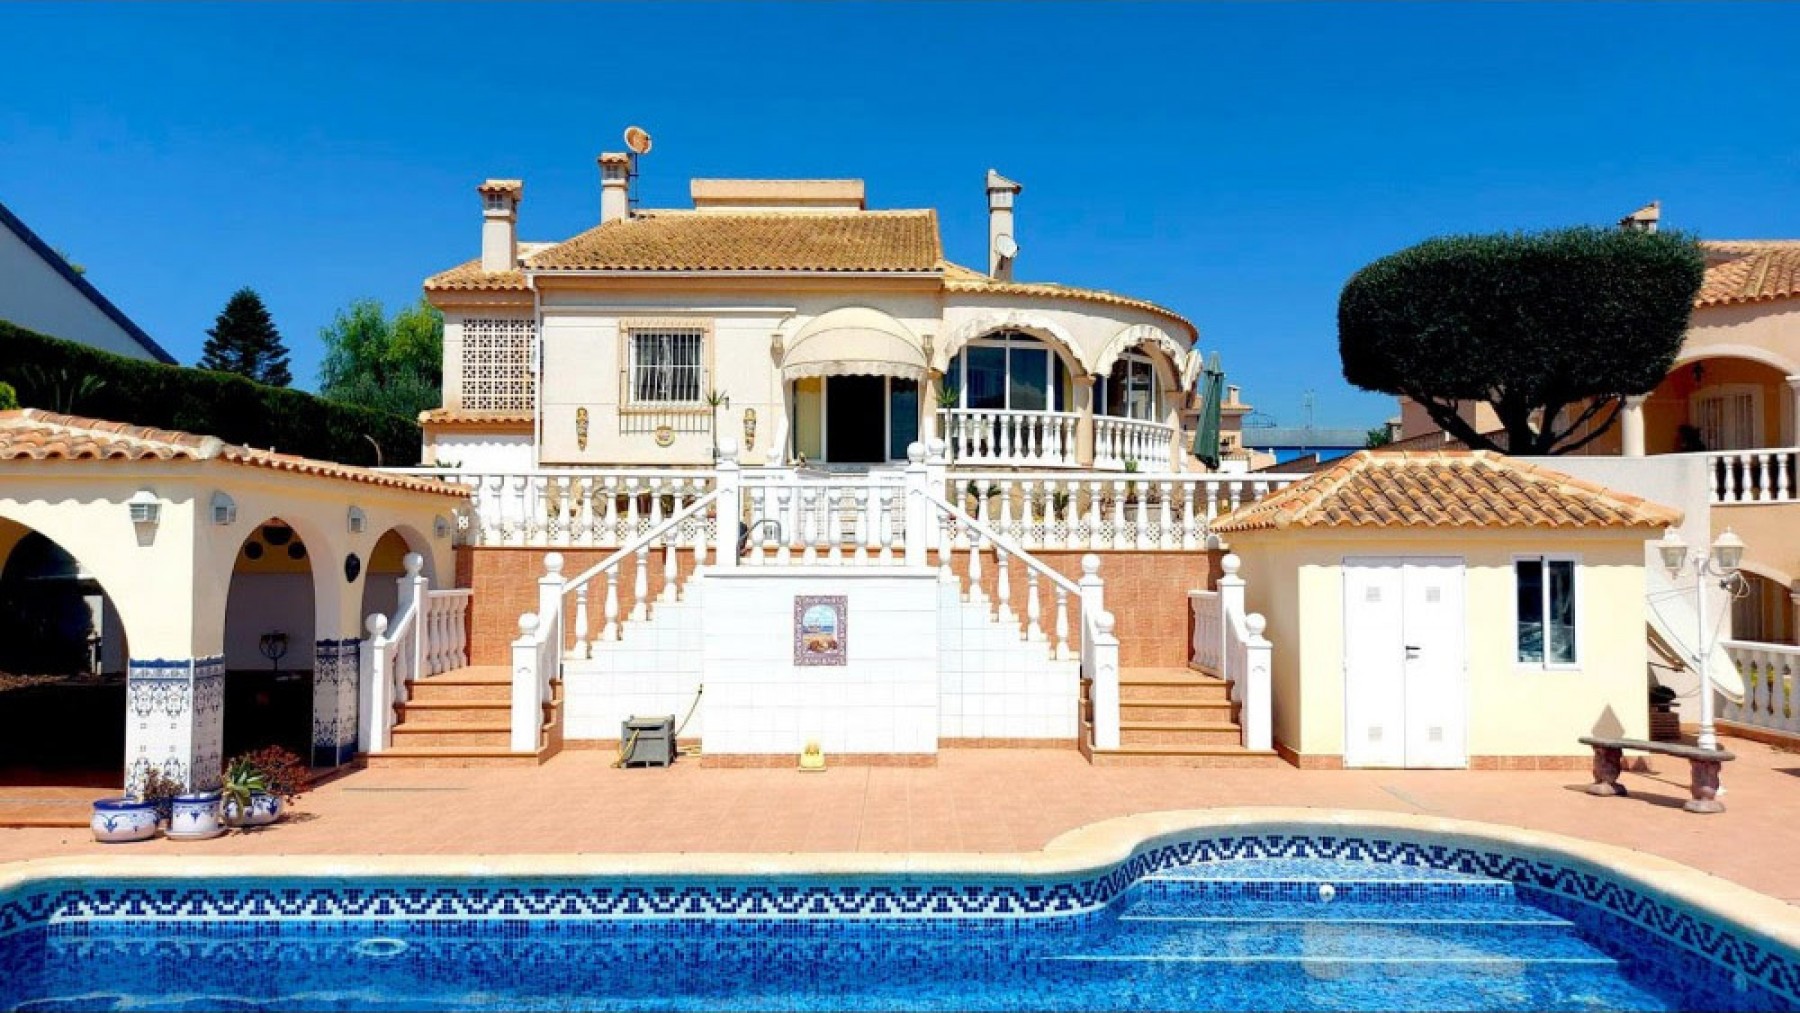 GERESERVEERD! Luxe villa met 4 slaapkamers en 3 badkamers in La Marina met dubbele garage